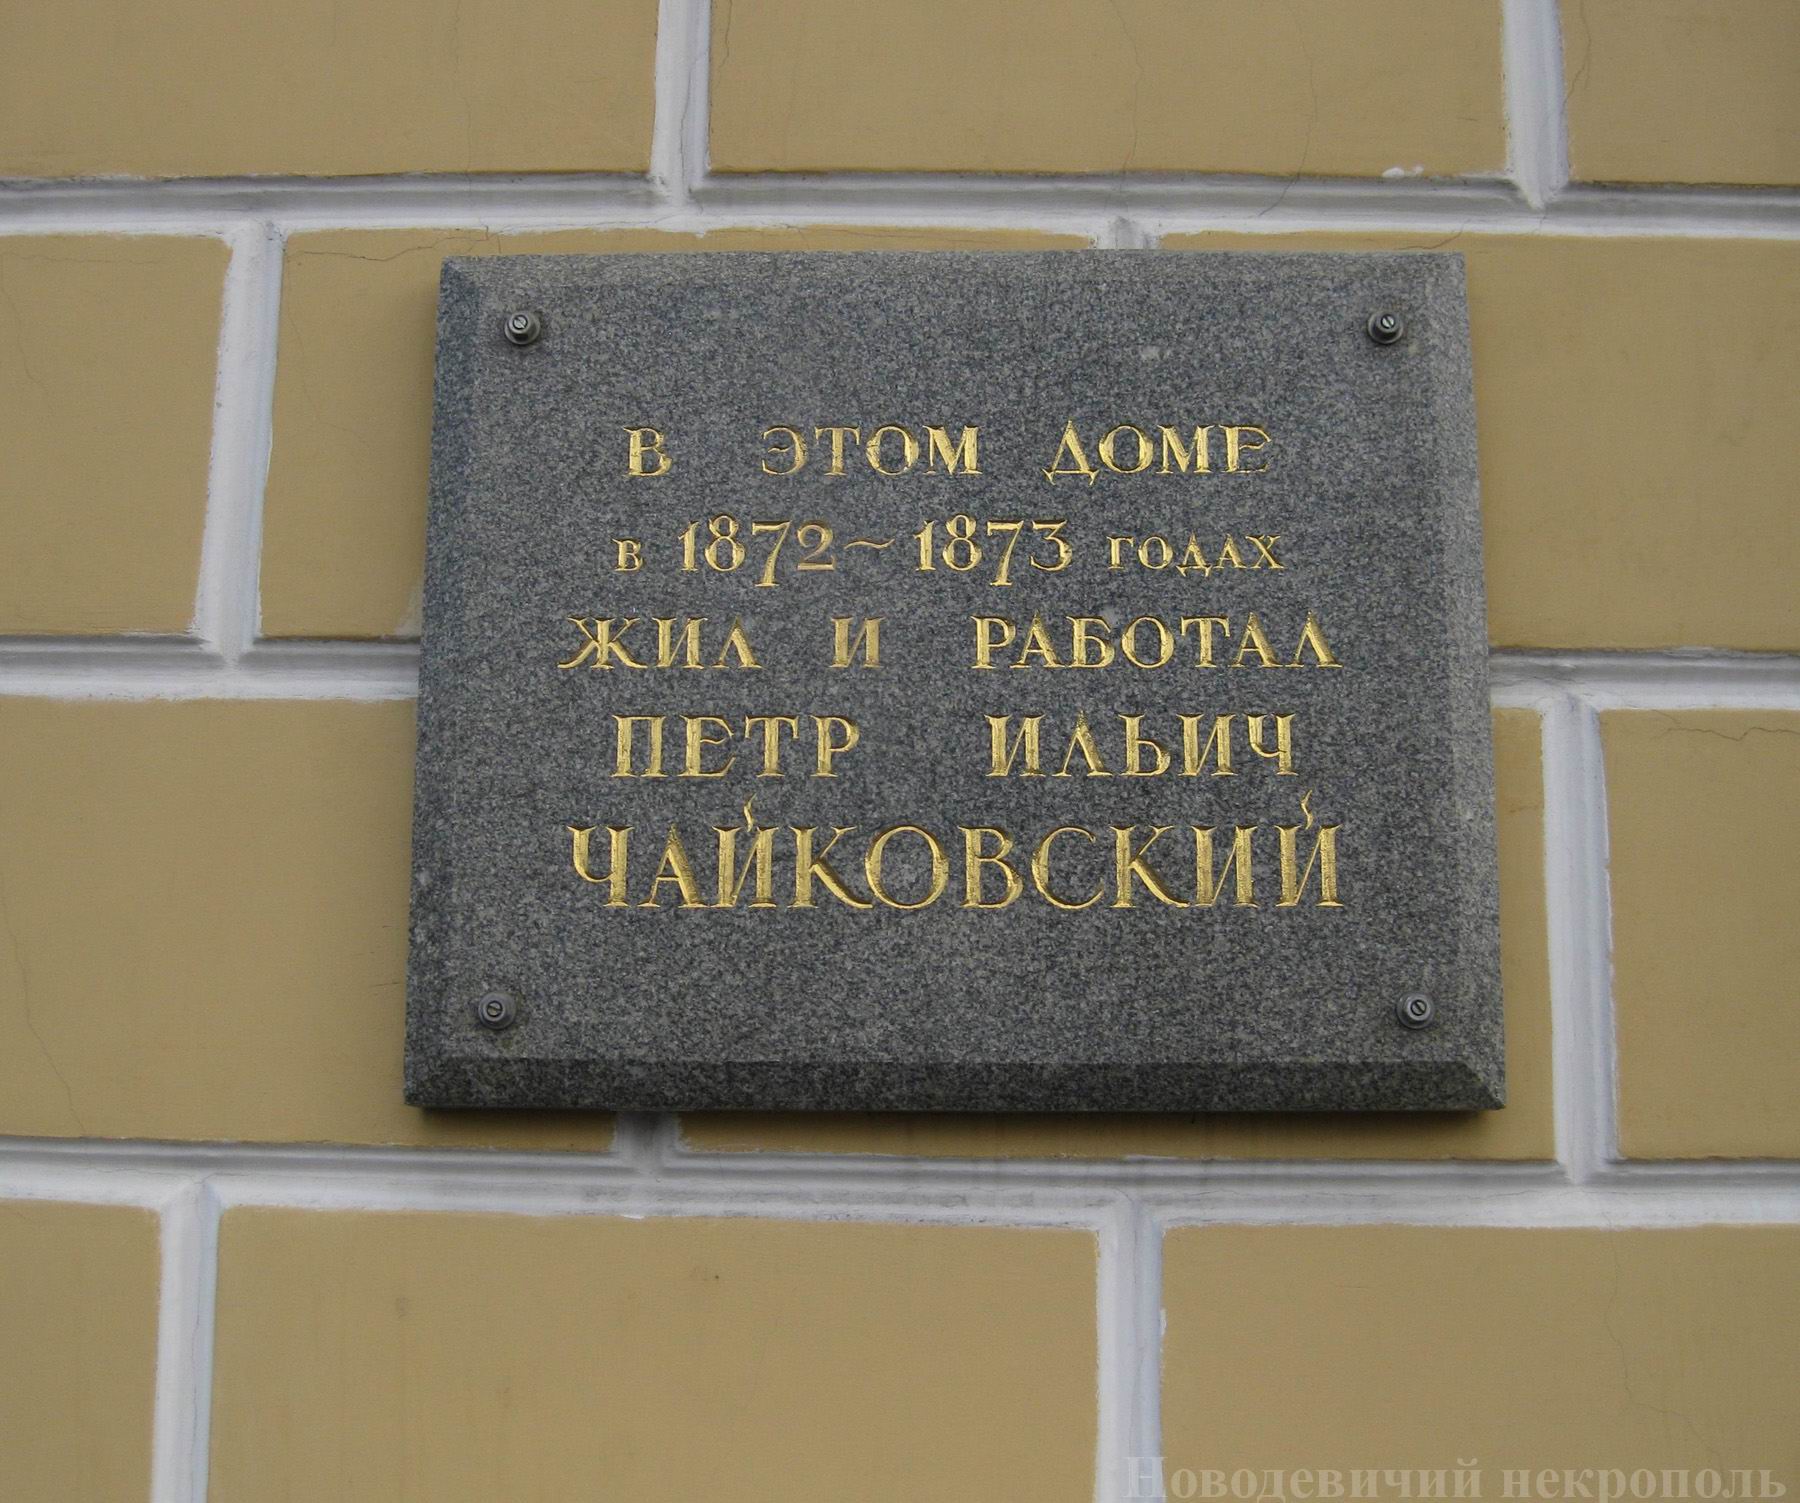 Мемориальная доска Чайковскому П.И. (1840-1893), на Кудринской площади, дом 46/54.